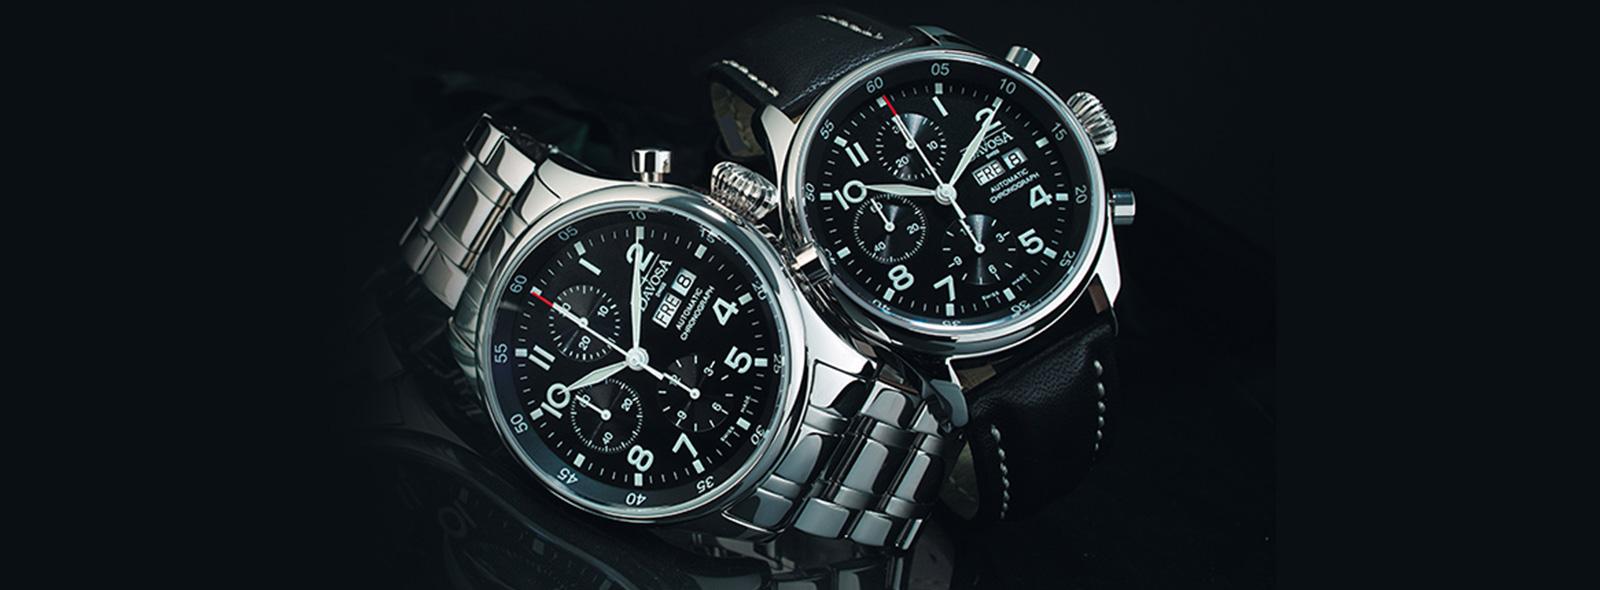 Jak ustawić zegarek z chronografem? | Zegarownia.pl Blog